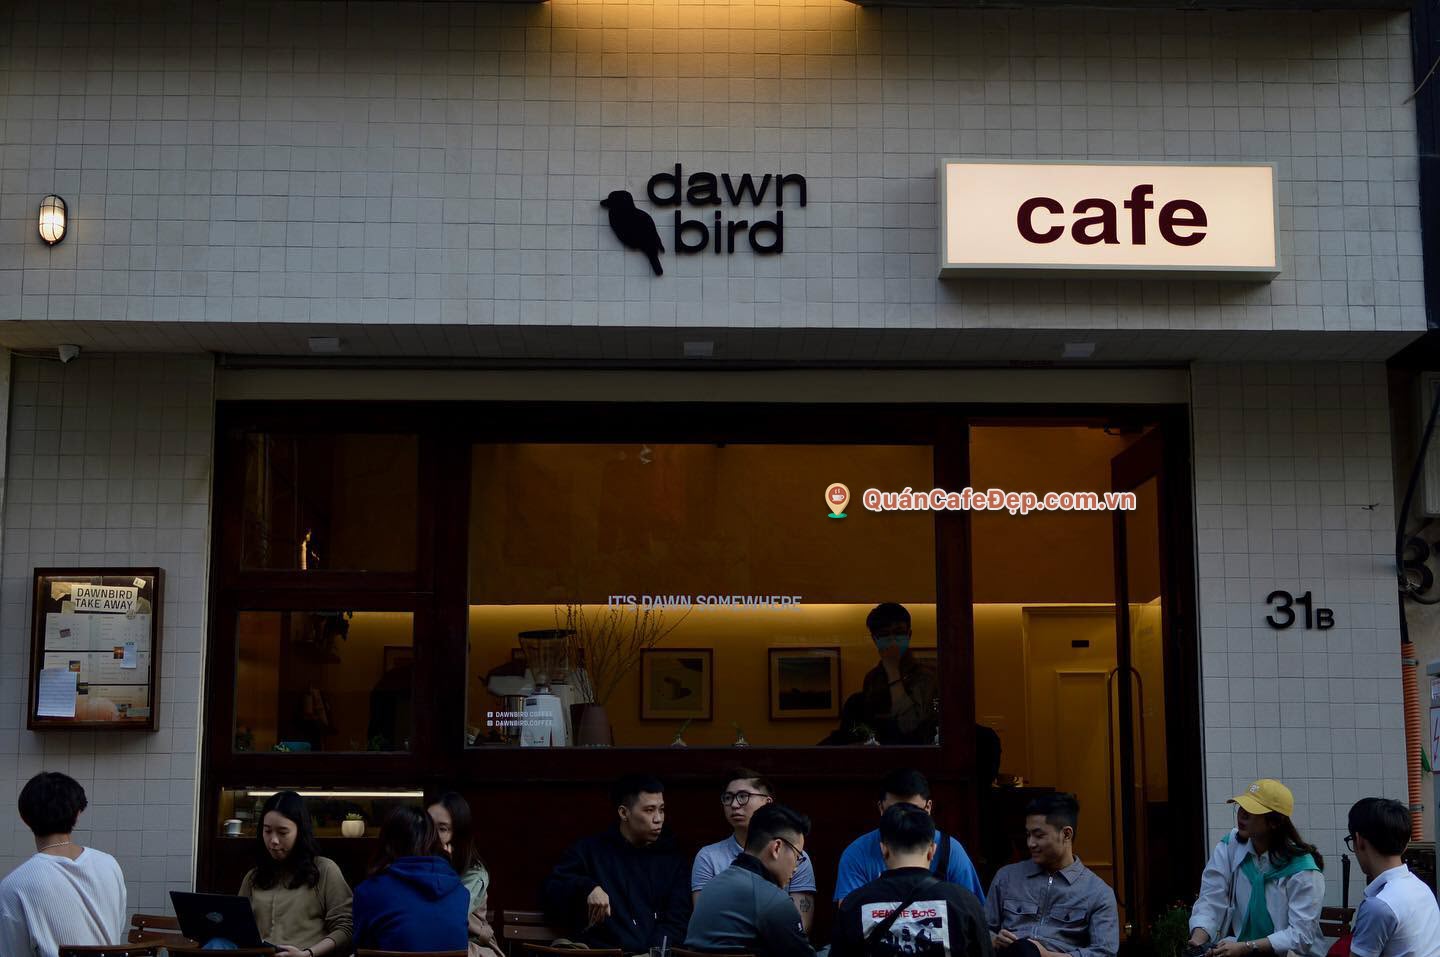 Dawnbird Cafe